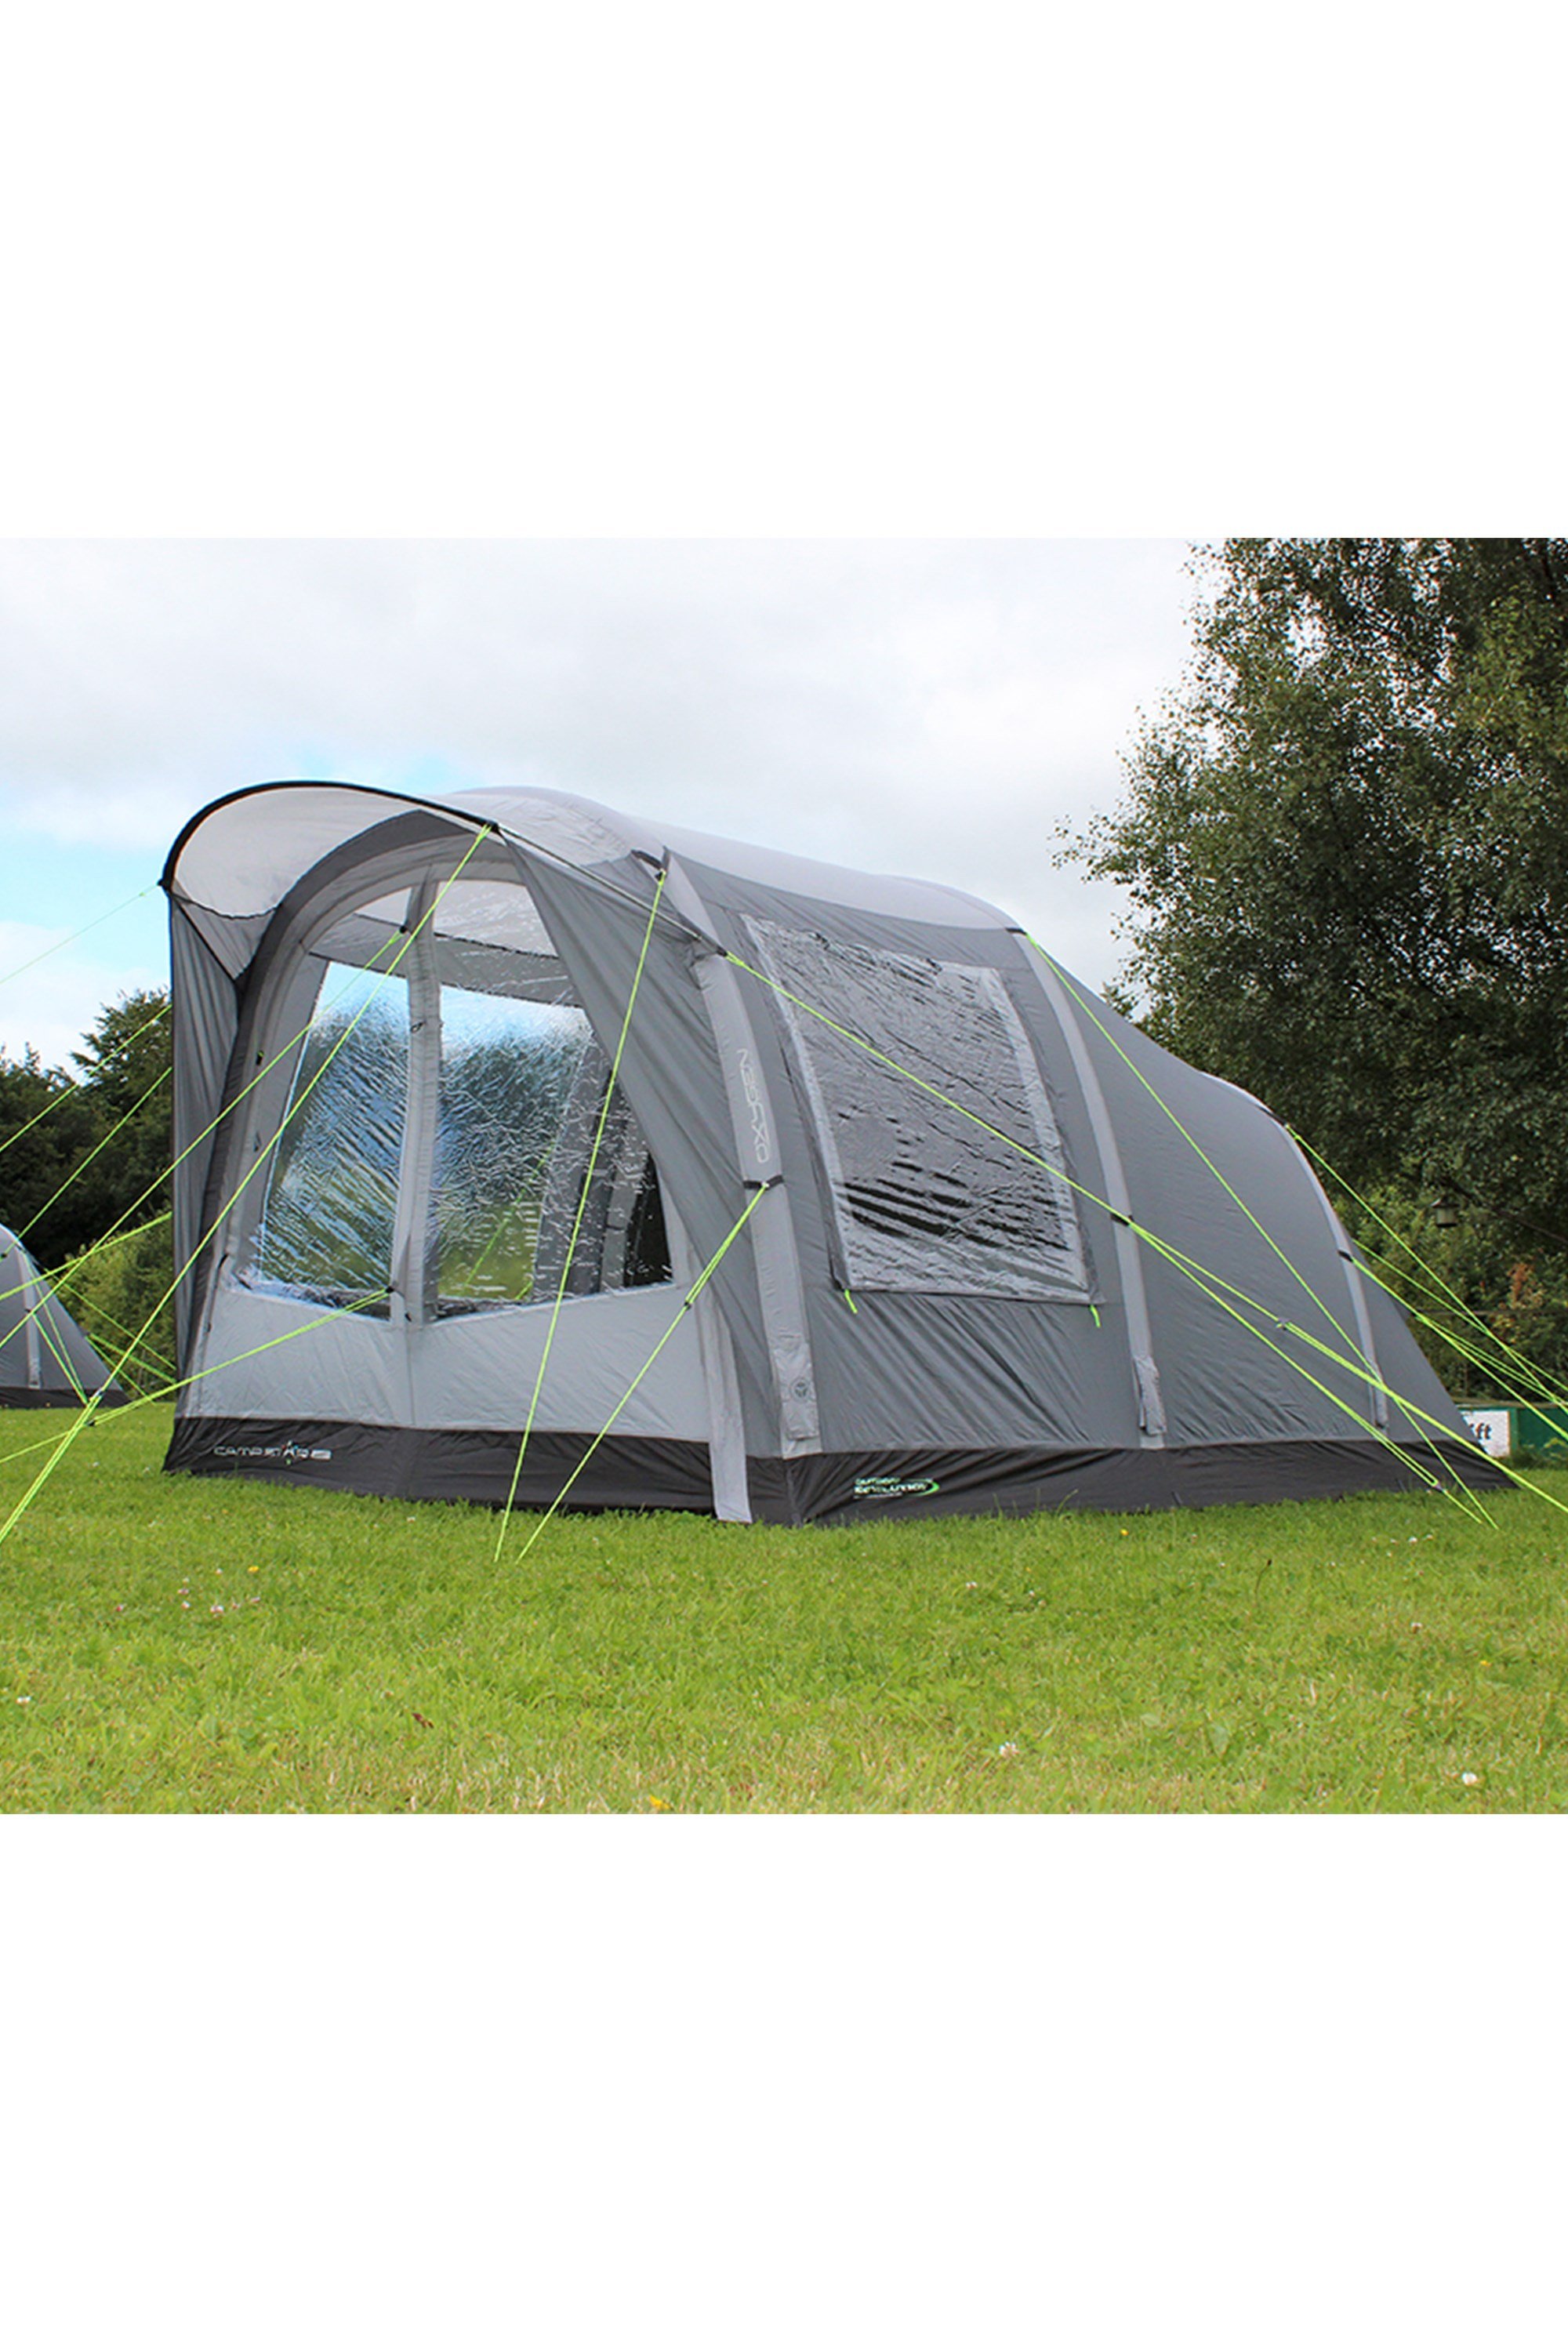 Camp Star 350 3 Man Tent Bundle - Grey